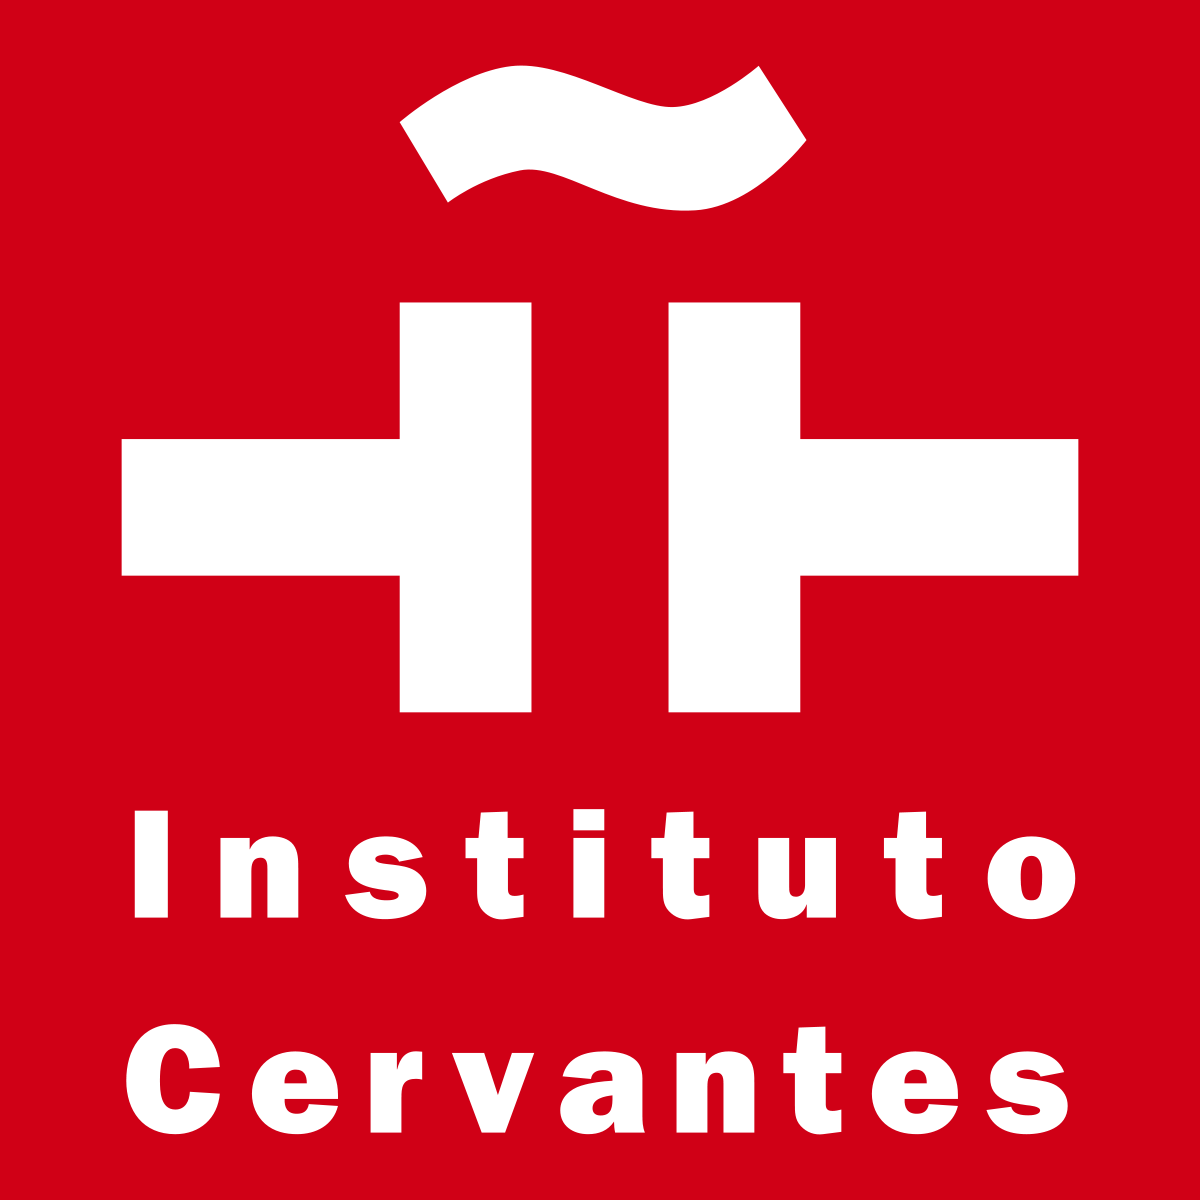 El Instituto Cervantes ha convocado 8 becas de formación. La convocatoria ha sido publicada en el BOE núm. 98 de 25 de abril de 2017. La finalidad de las becas es formar especialistas en diferentes áreas del Instituto Cervantes. La beca del área de Cultura se orienta hacia titulados/as del Grado en Información y Documentación.